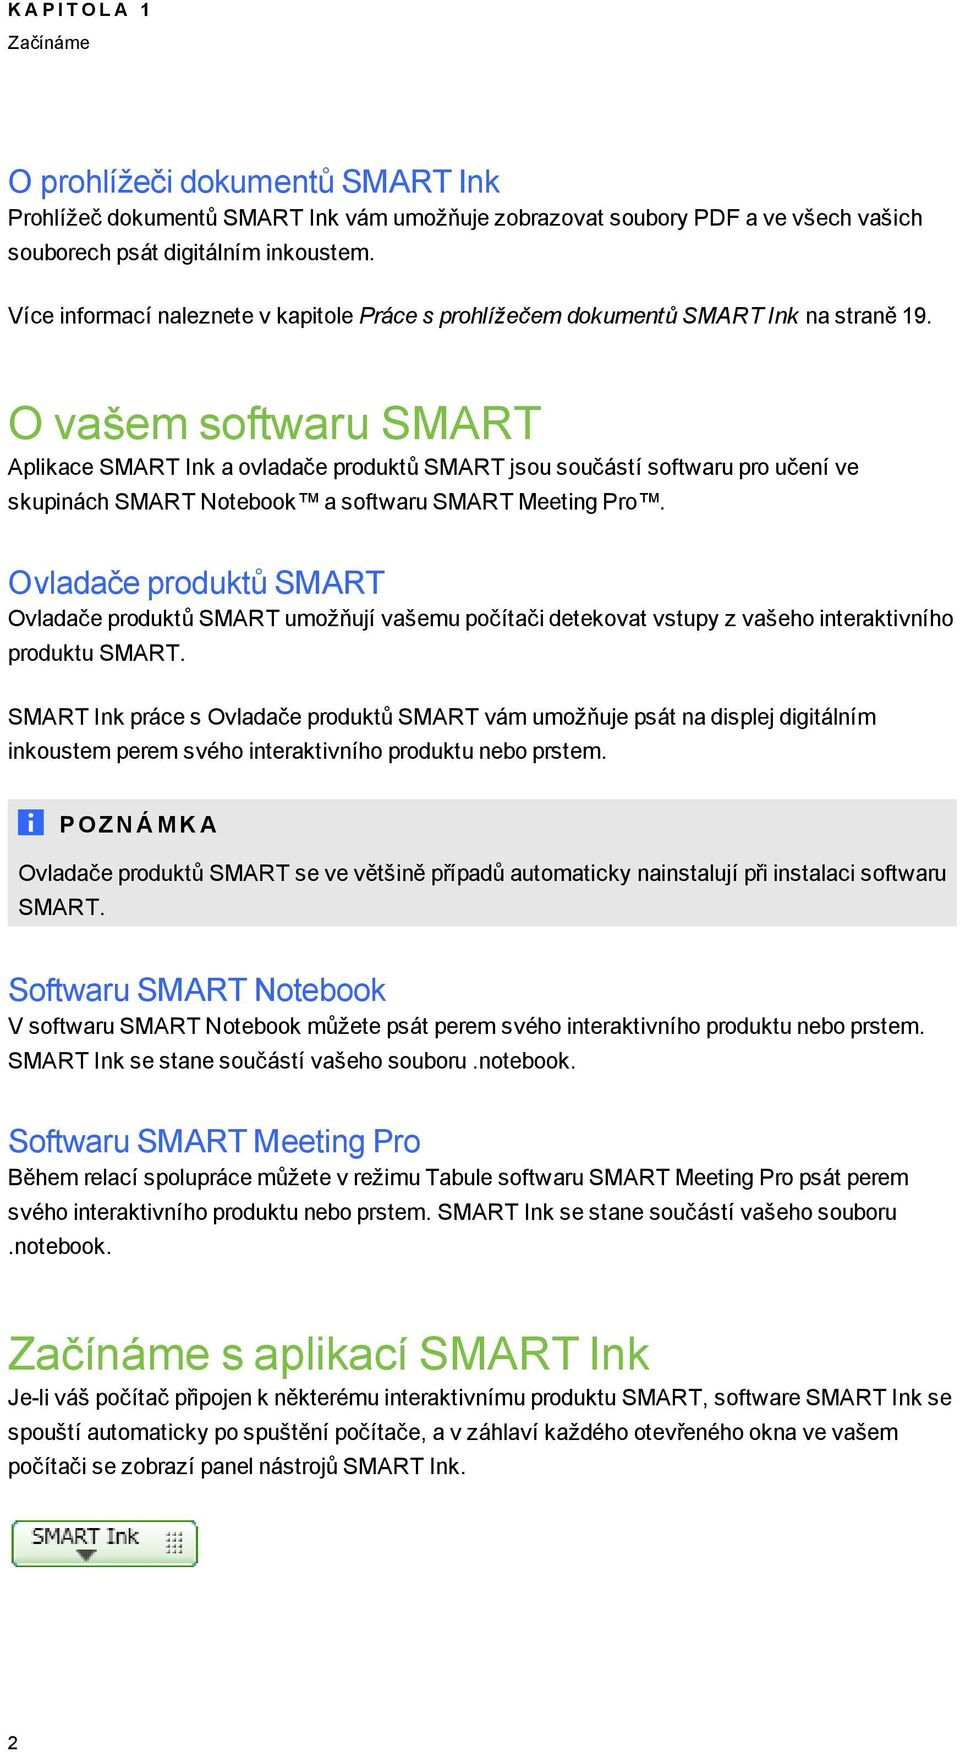 O vašem softwaru SMART Aplikace SMART Ink a ovladače produktů SMART jsou součástí softwaru pro učení ve skupinách SMART Notebook a softwaru SMART Meetin Pro.